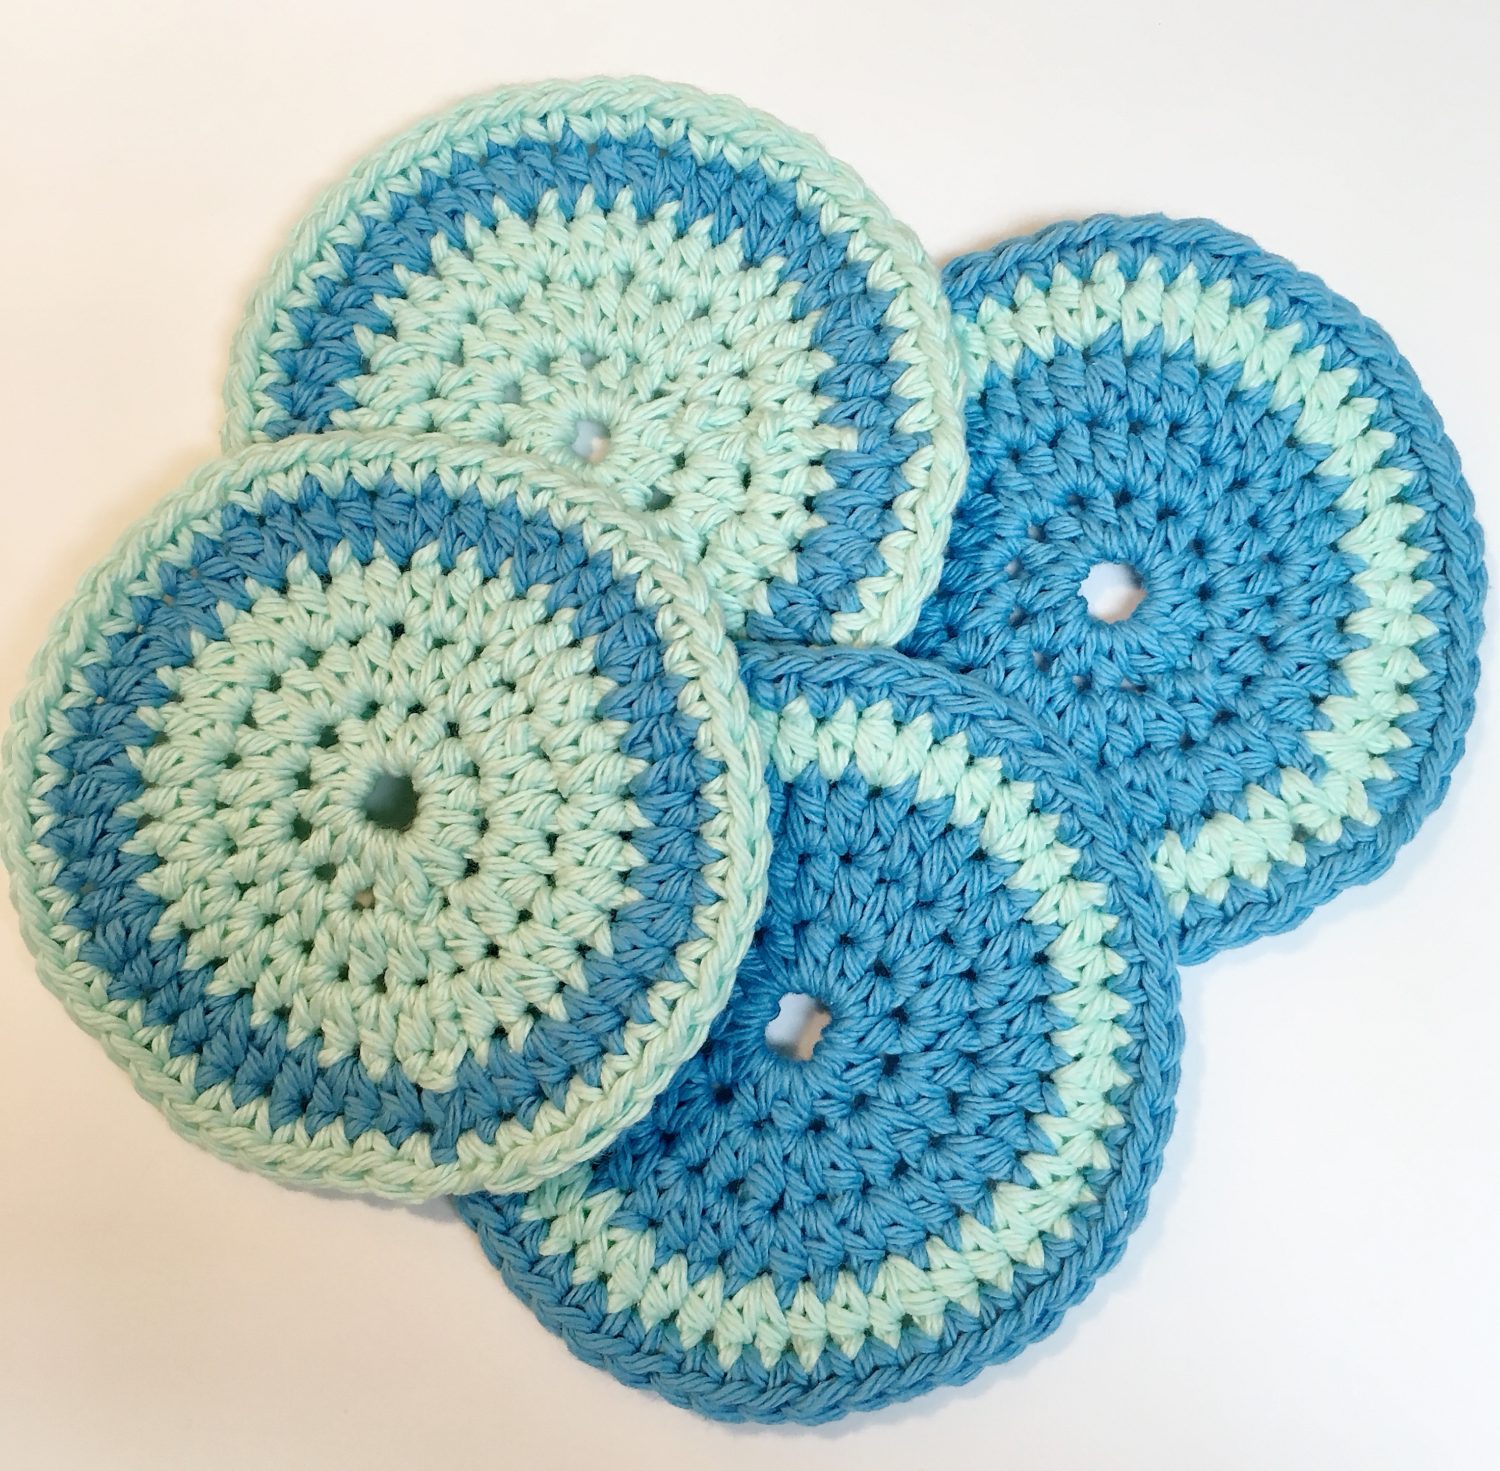 Crochet coaster pattern